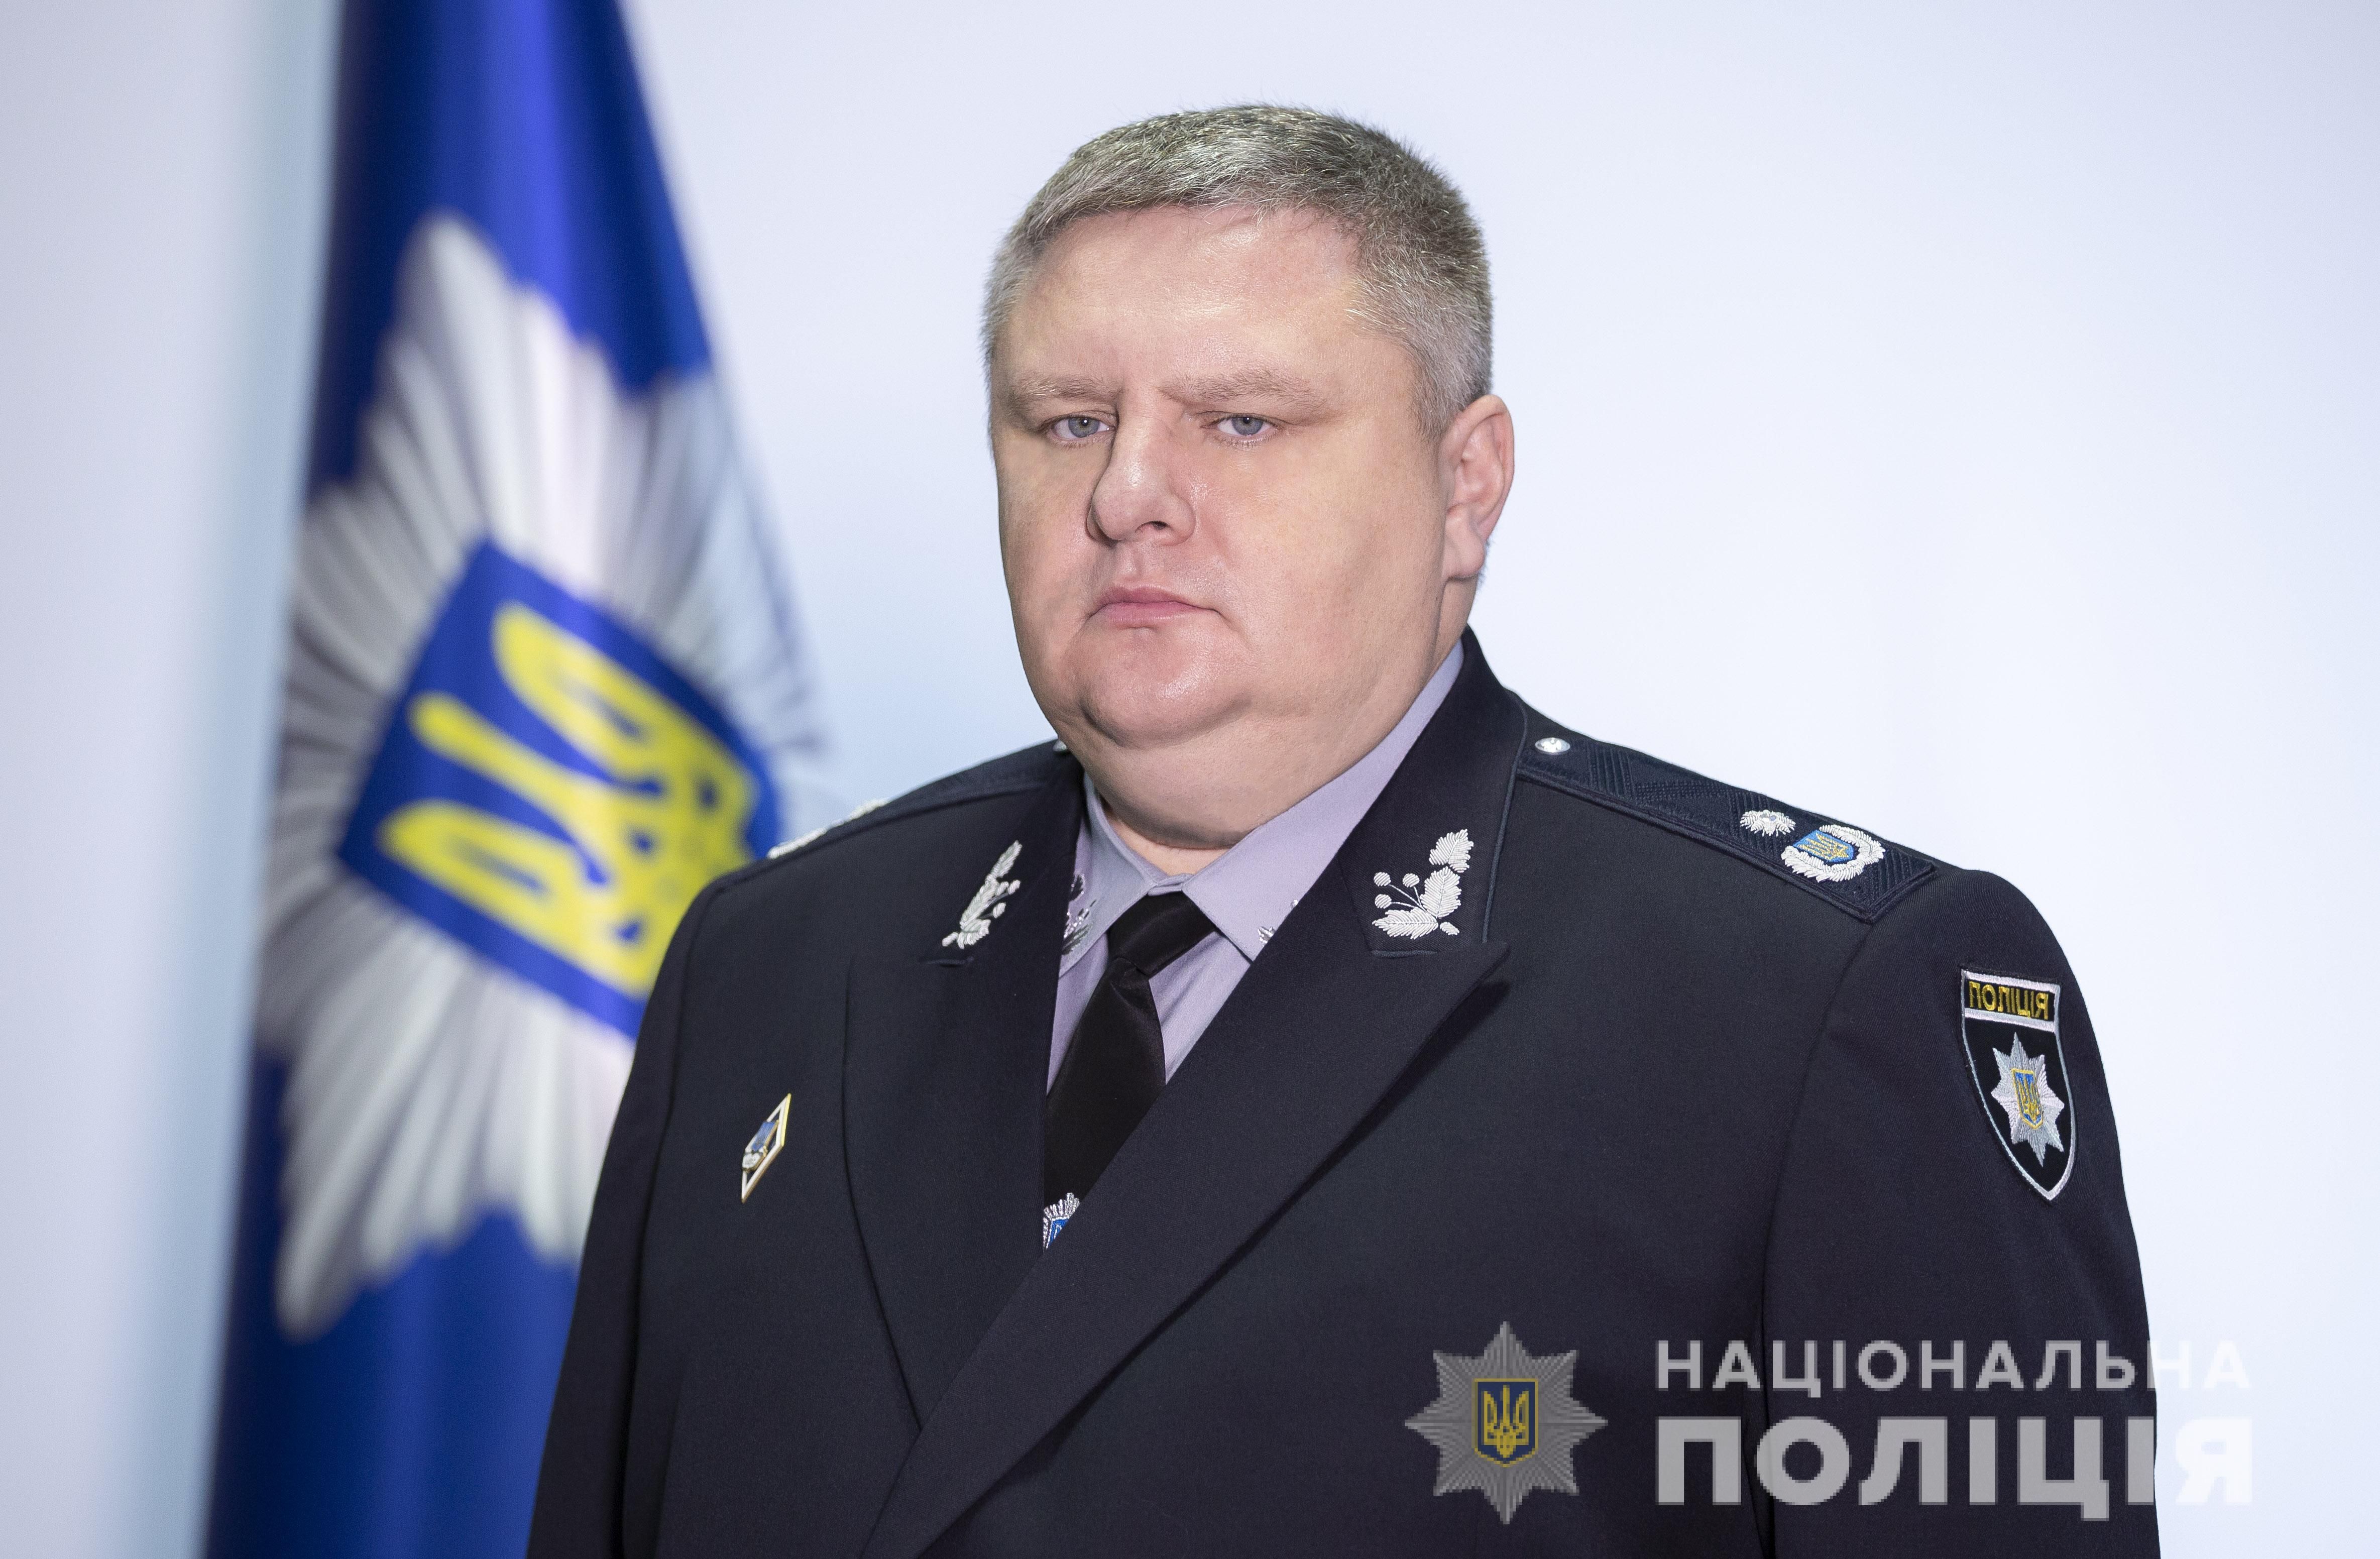 Кличко хочет назначить своим заместителем экс-главу столичной полиции Крищенко, – СМИ